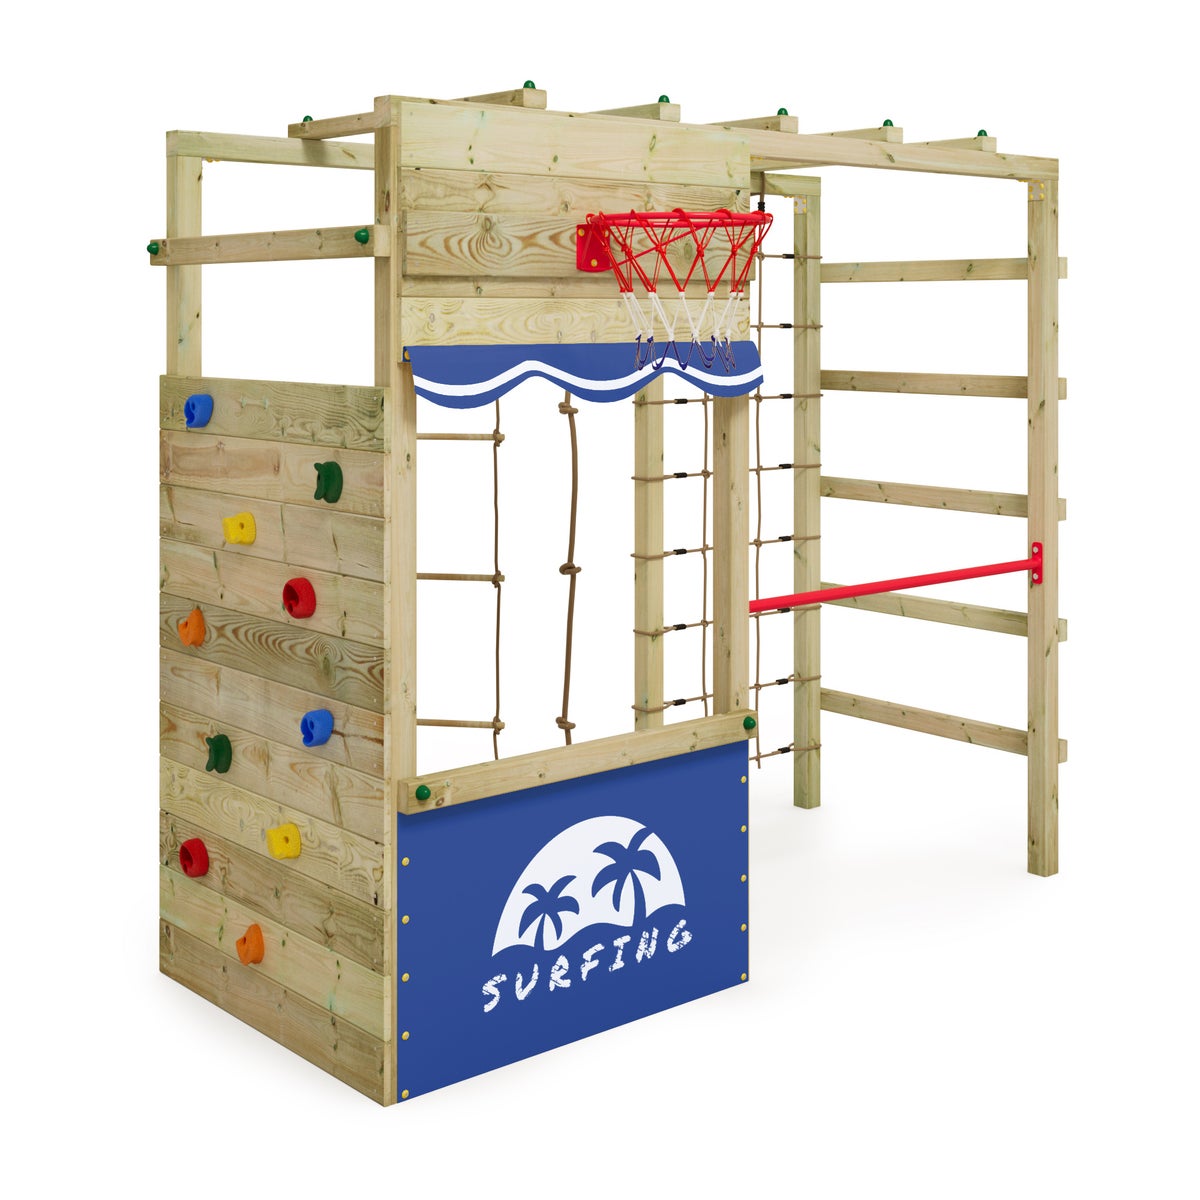 WICKEY Klettergerüst Spielturm Smart Action Gartenspielgerät mit Kletterwand und Spiel-Zubehör - blau